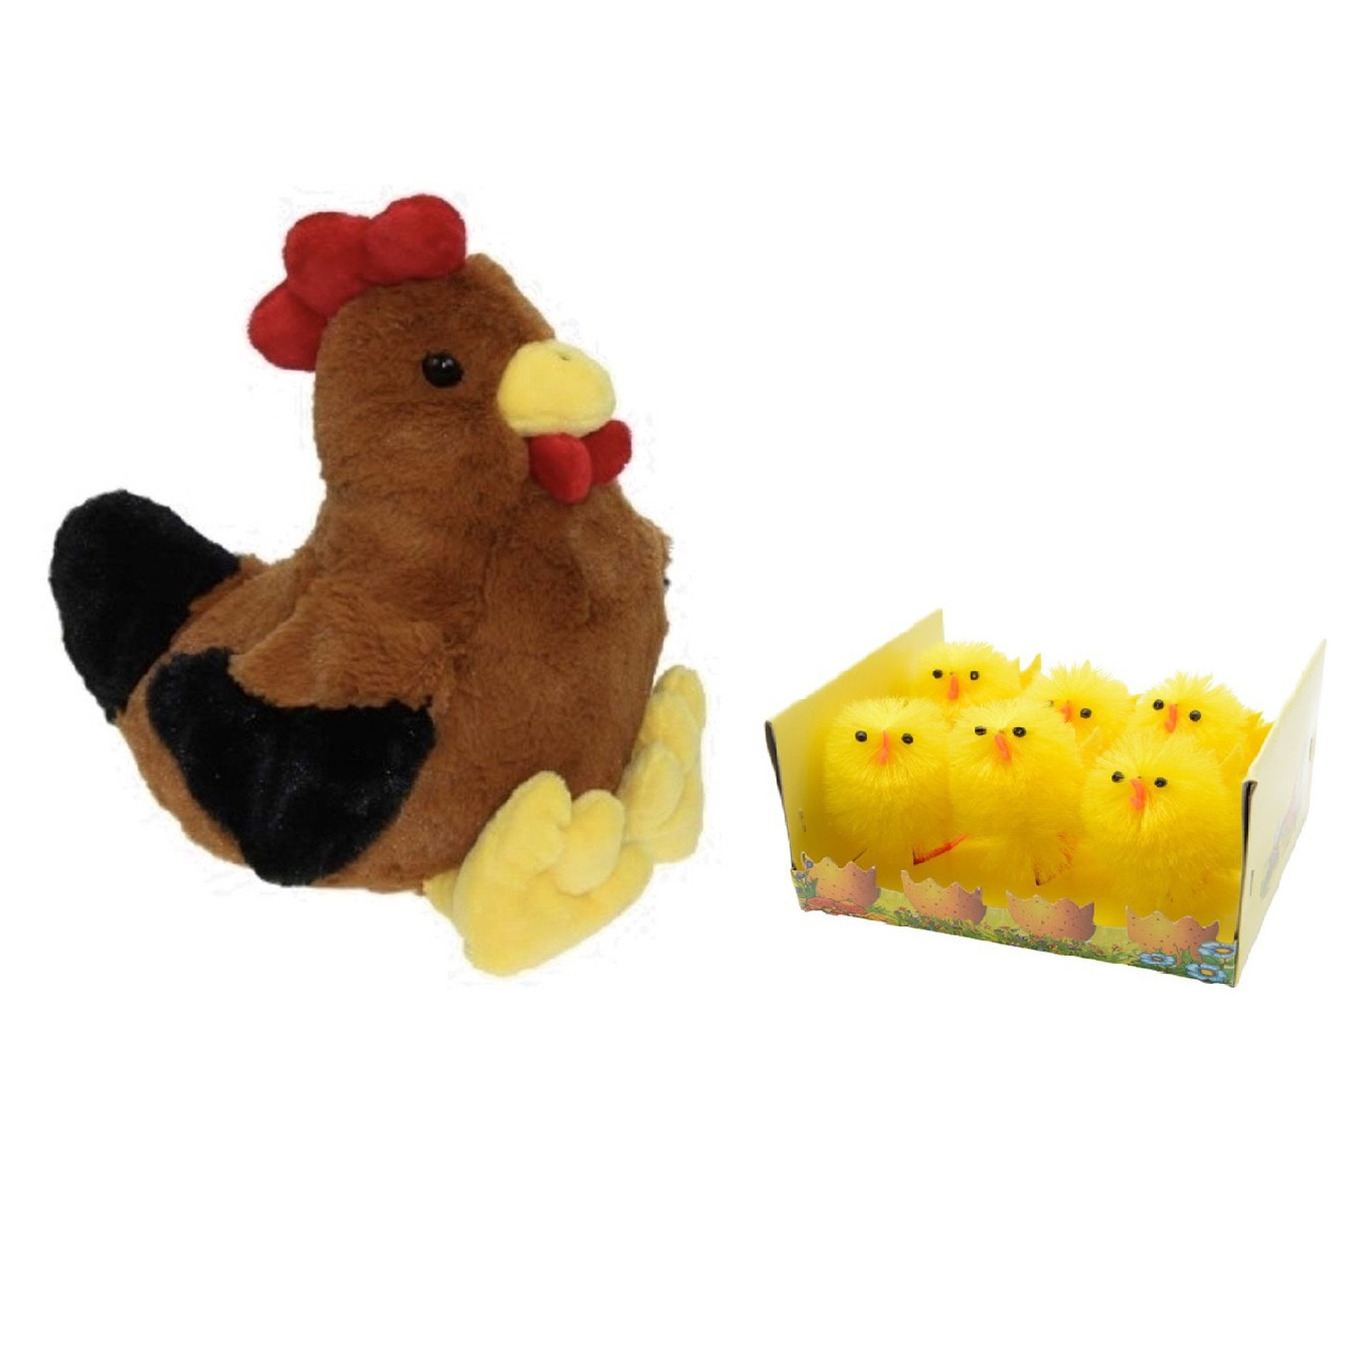 Pluche bruine kippen-hanen knuffel van 25 cm met 6x stuks mini kuikentjes 6,5 cm